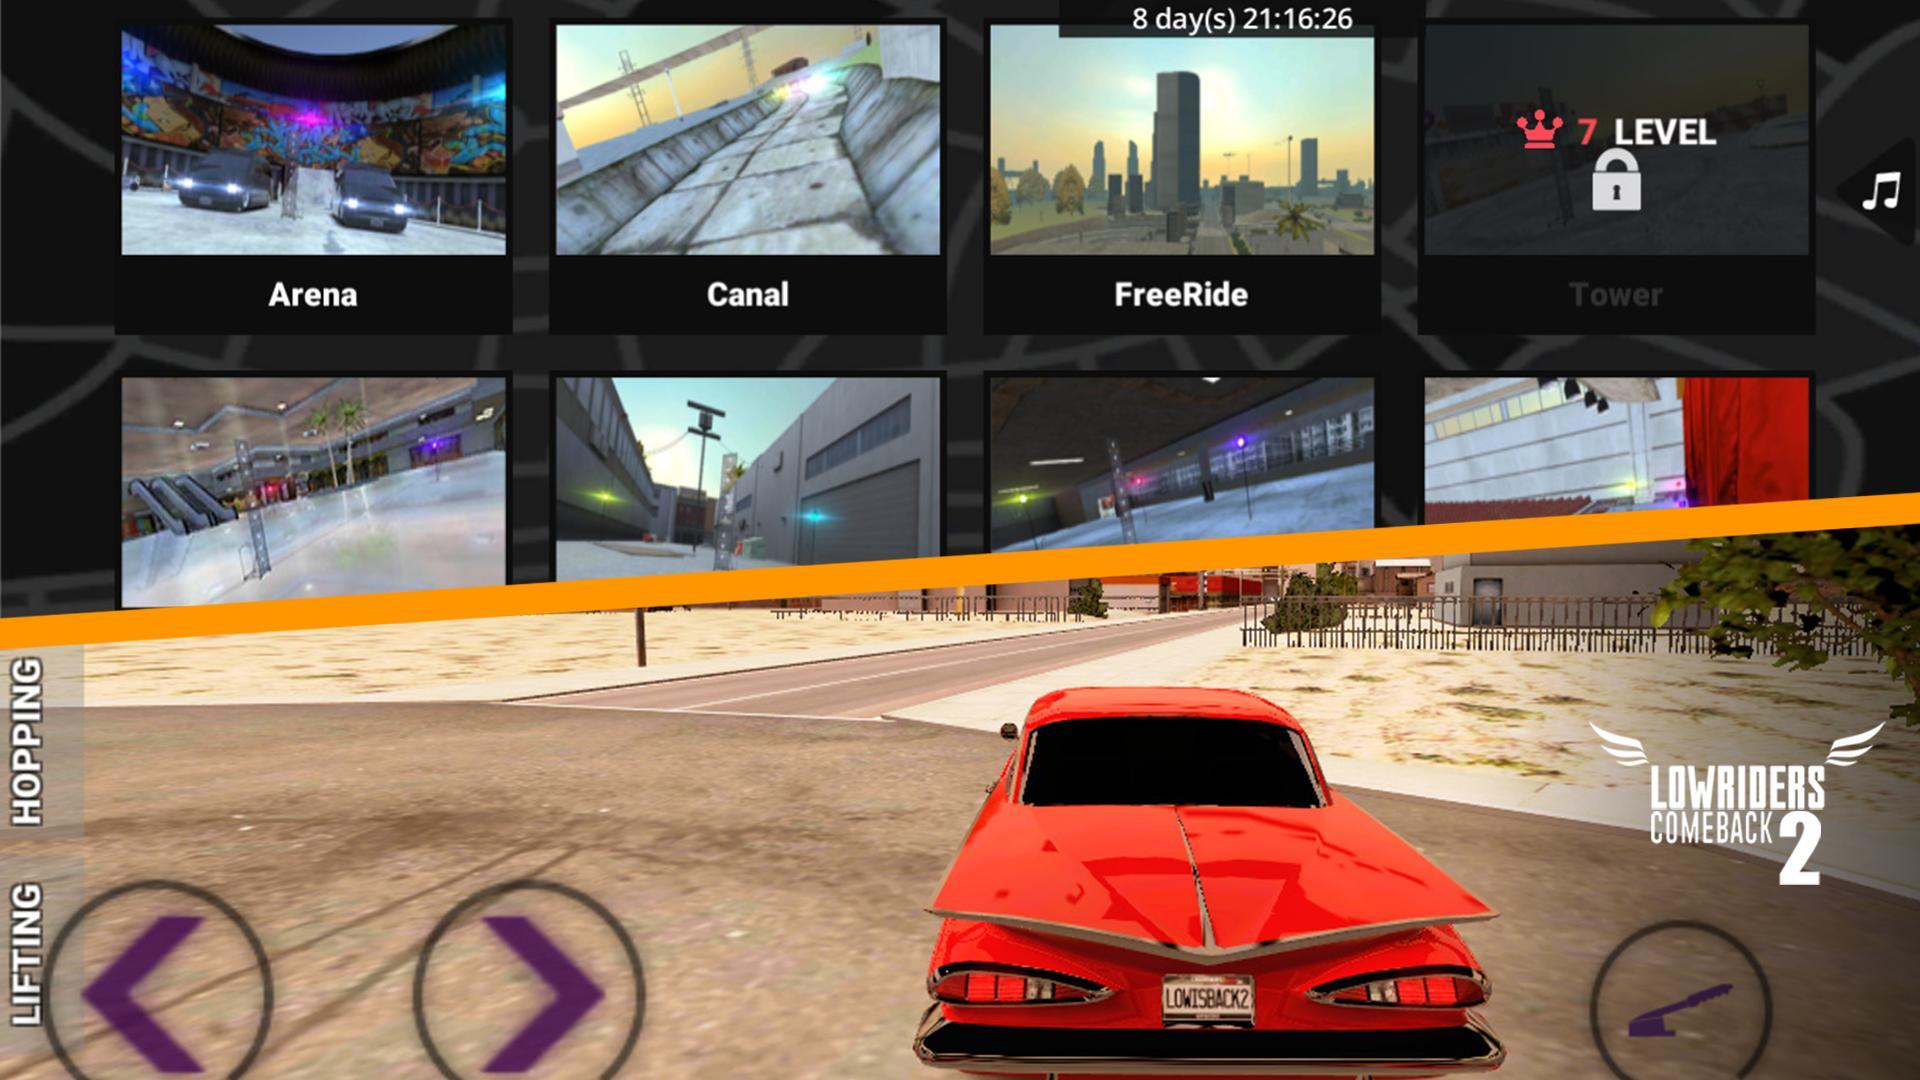 Lowriders Comeback 2: Cruising screenshot game